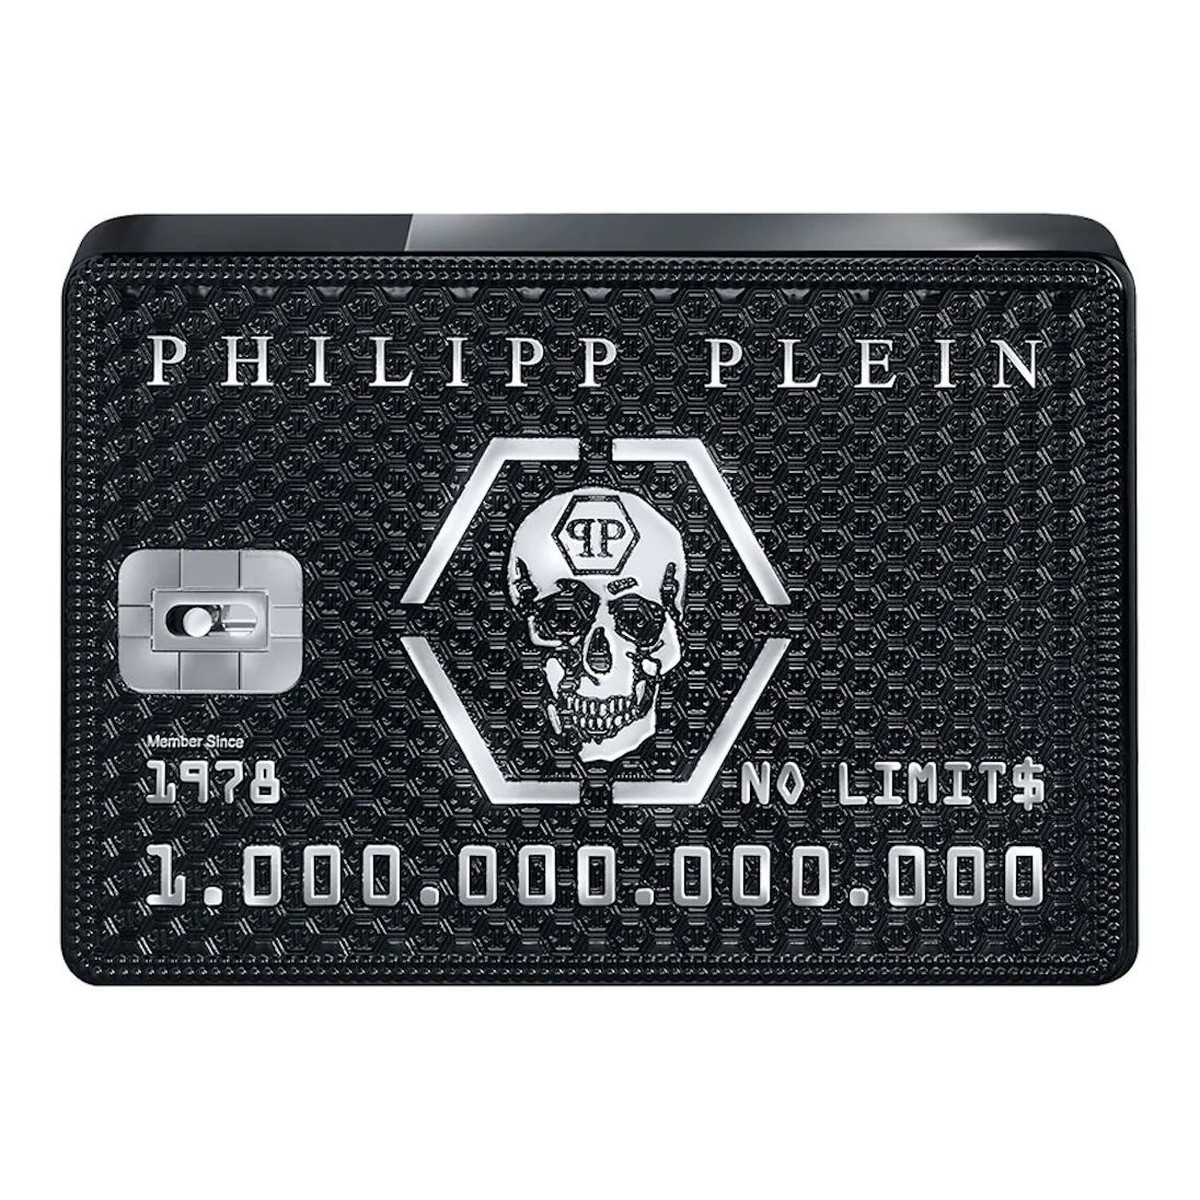 Philipp Plein No Limits Woda perfumowana spray 90ml